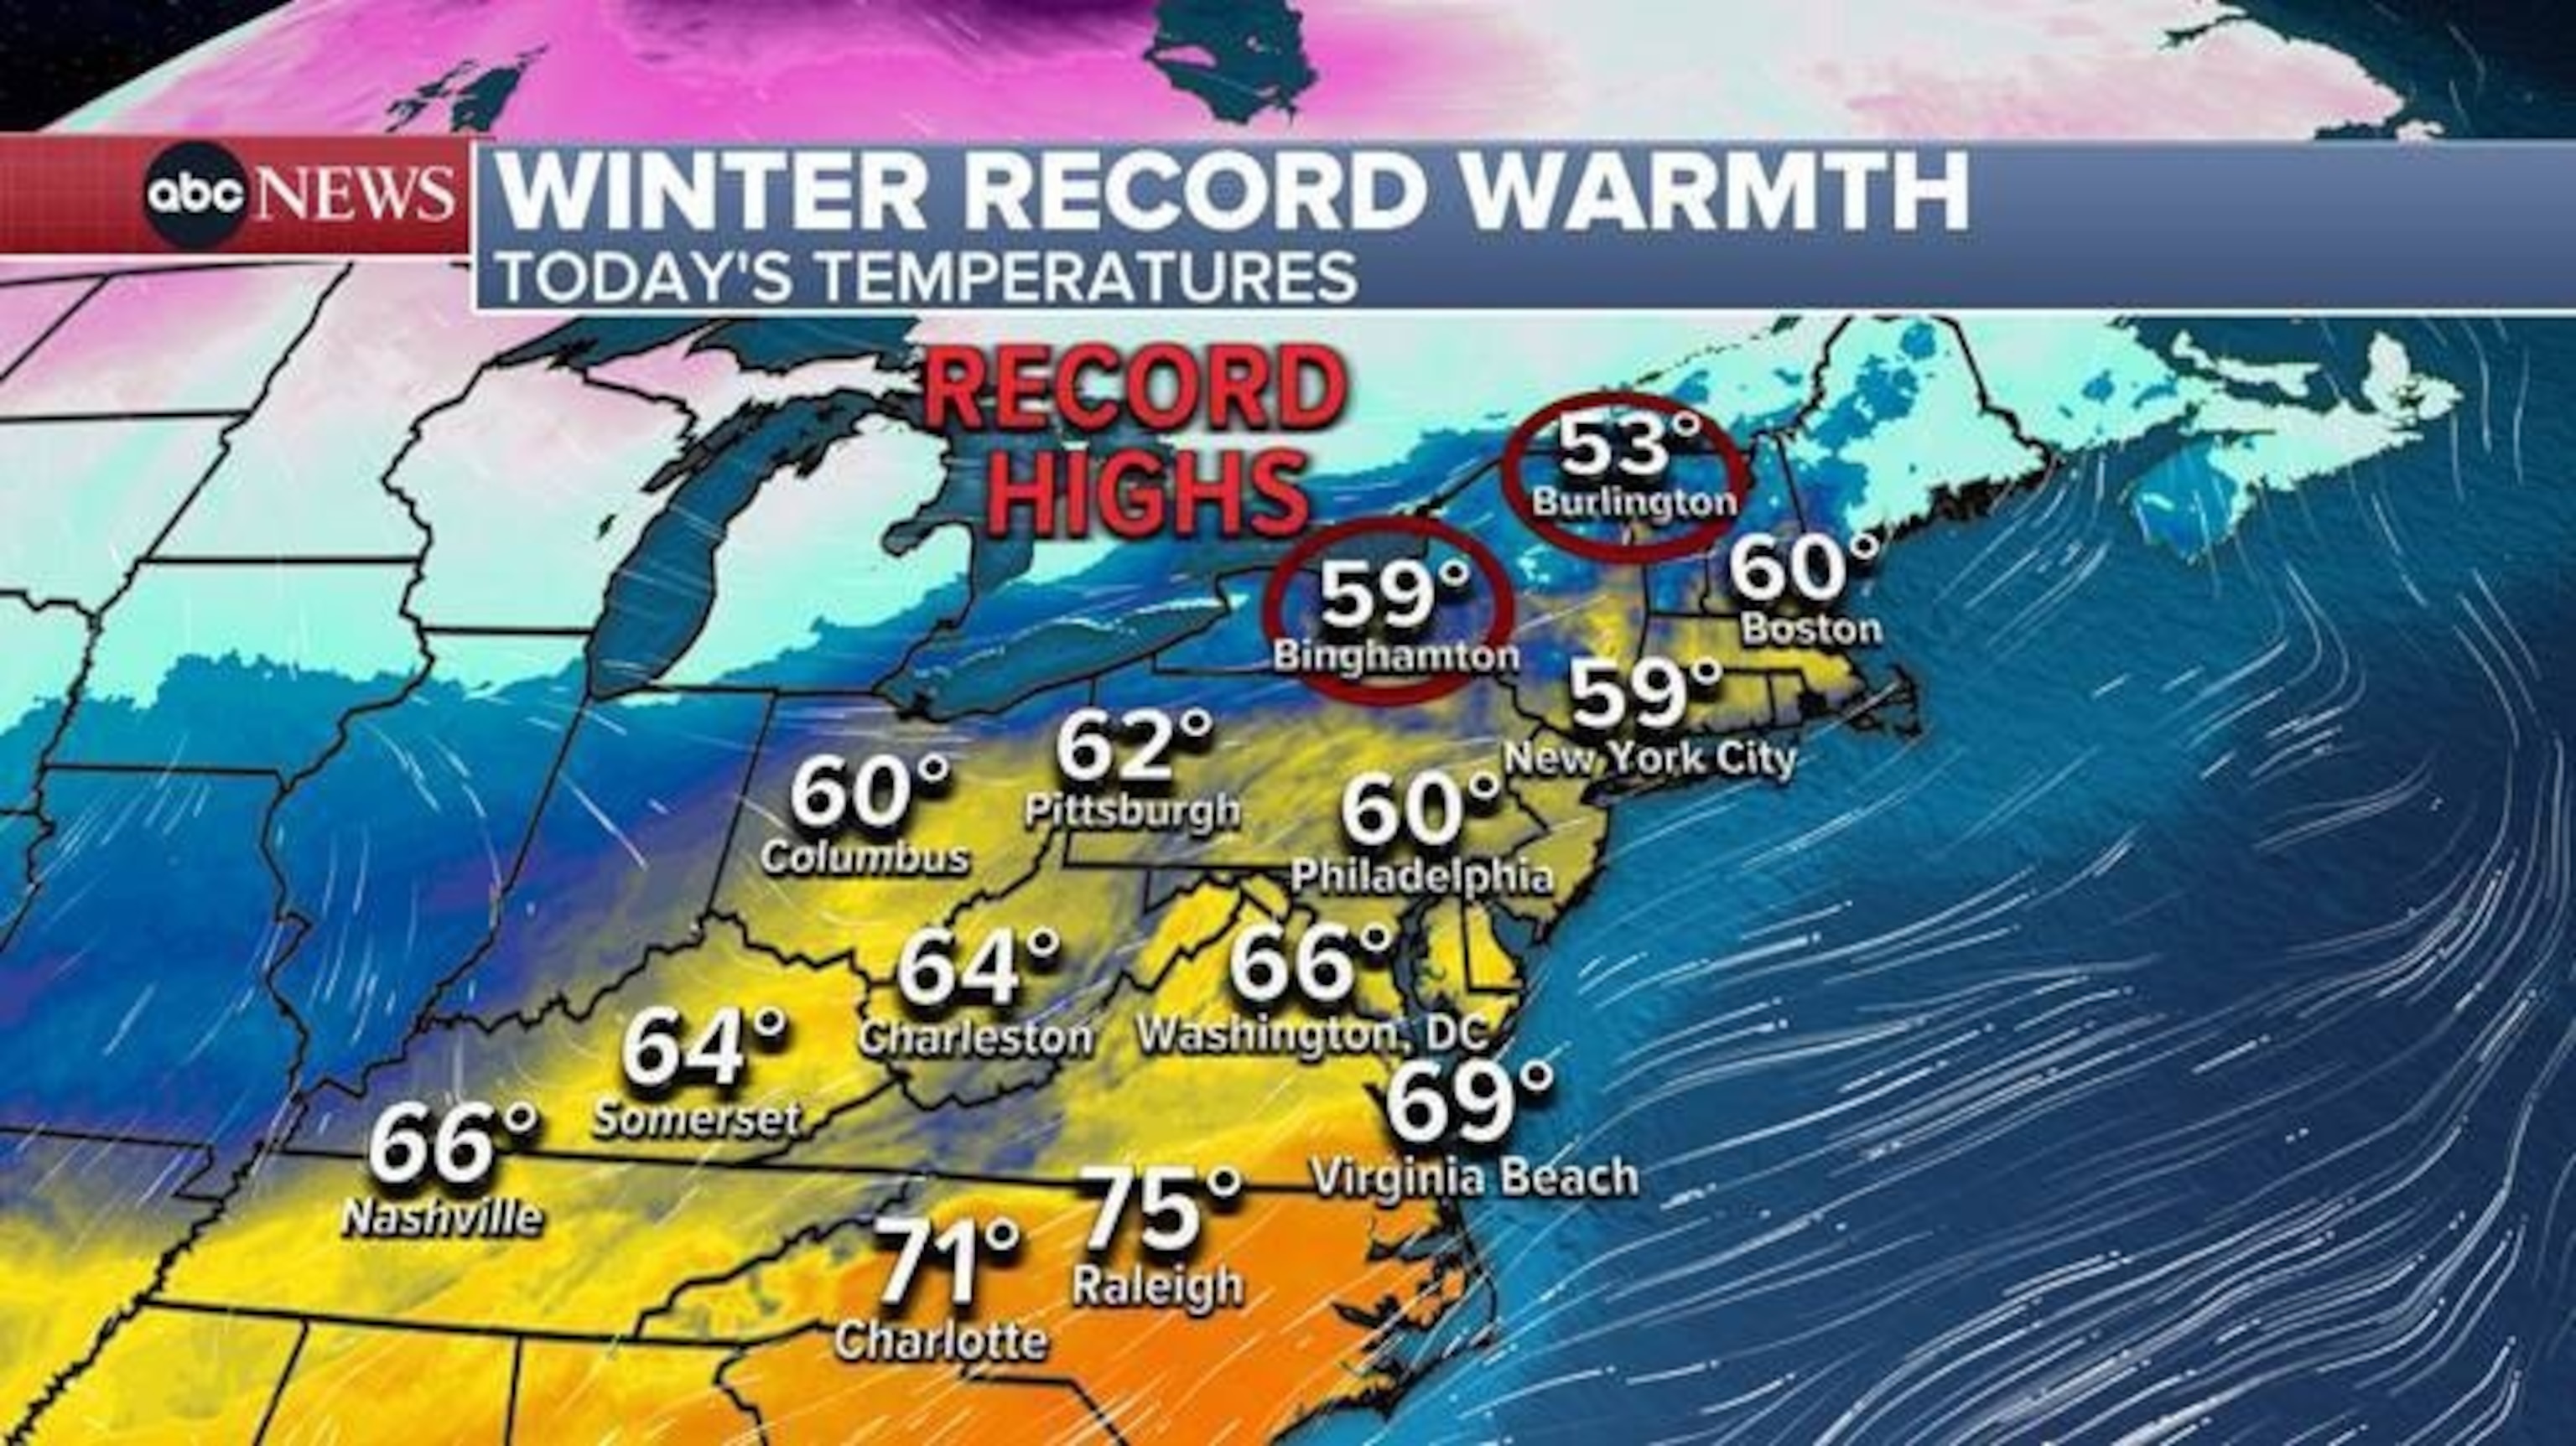 PHOTO: winter record warmth